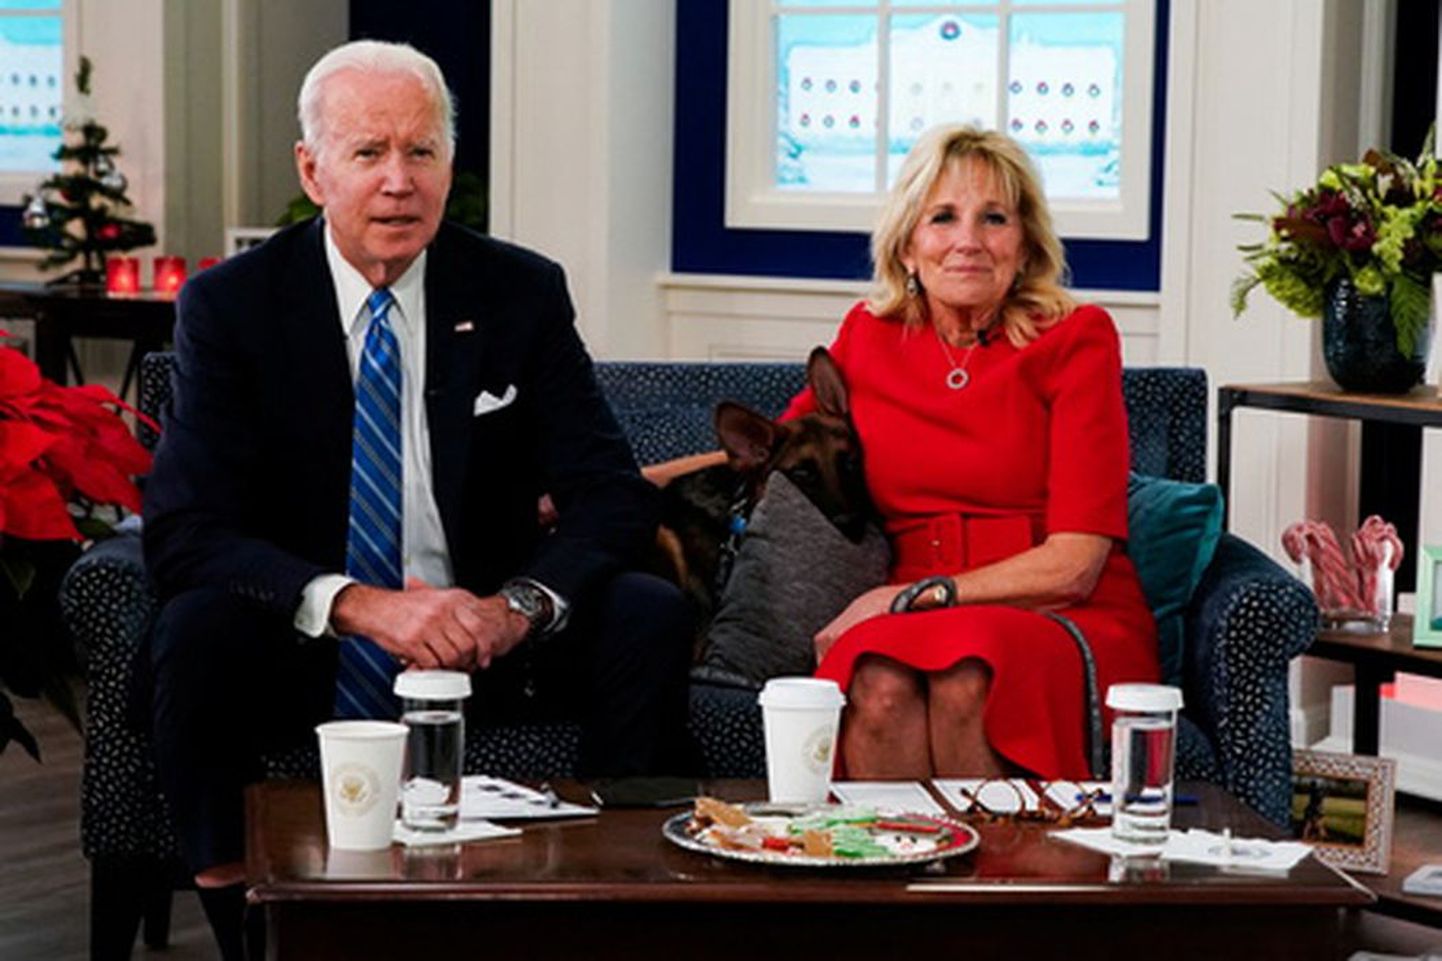 USA presidendi Joe Bideni jõulupöördumine koos abikaasa Jilli ja koerakutsika Commanderiga.